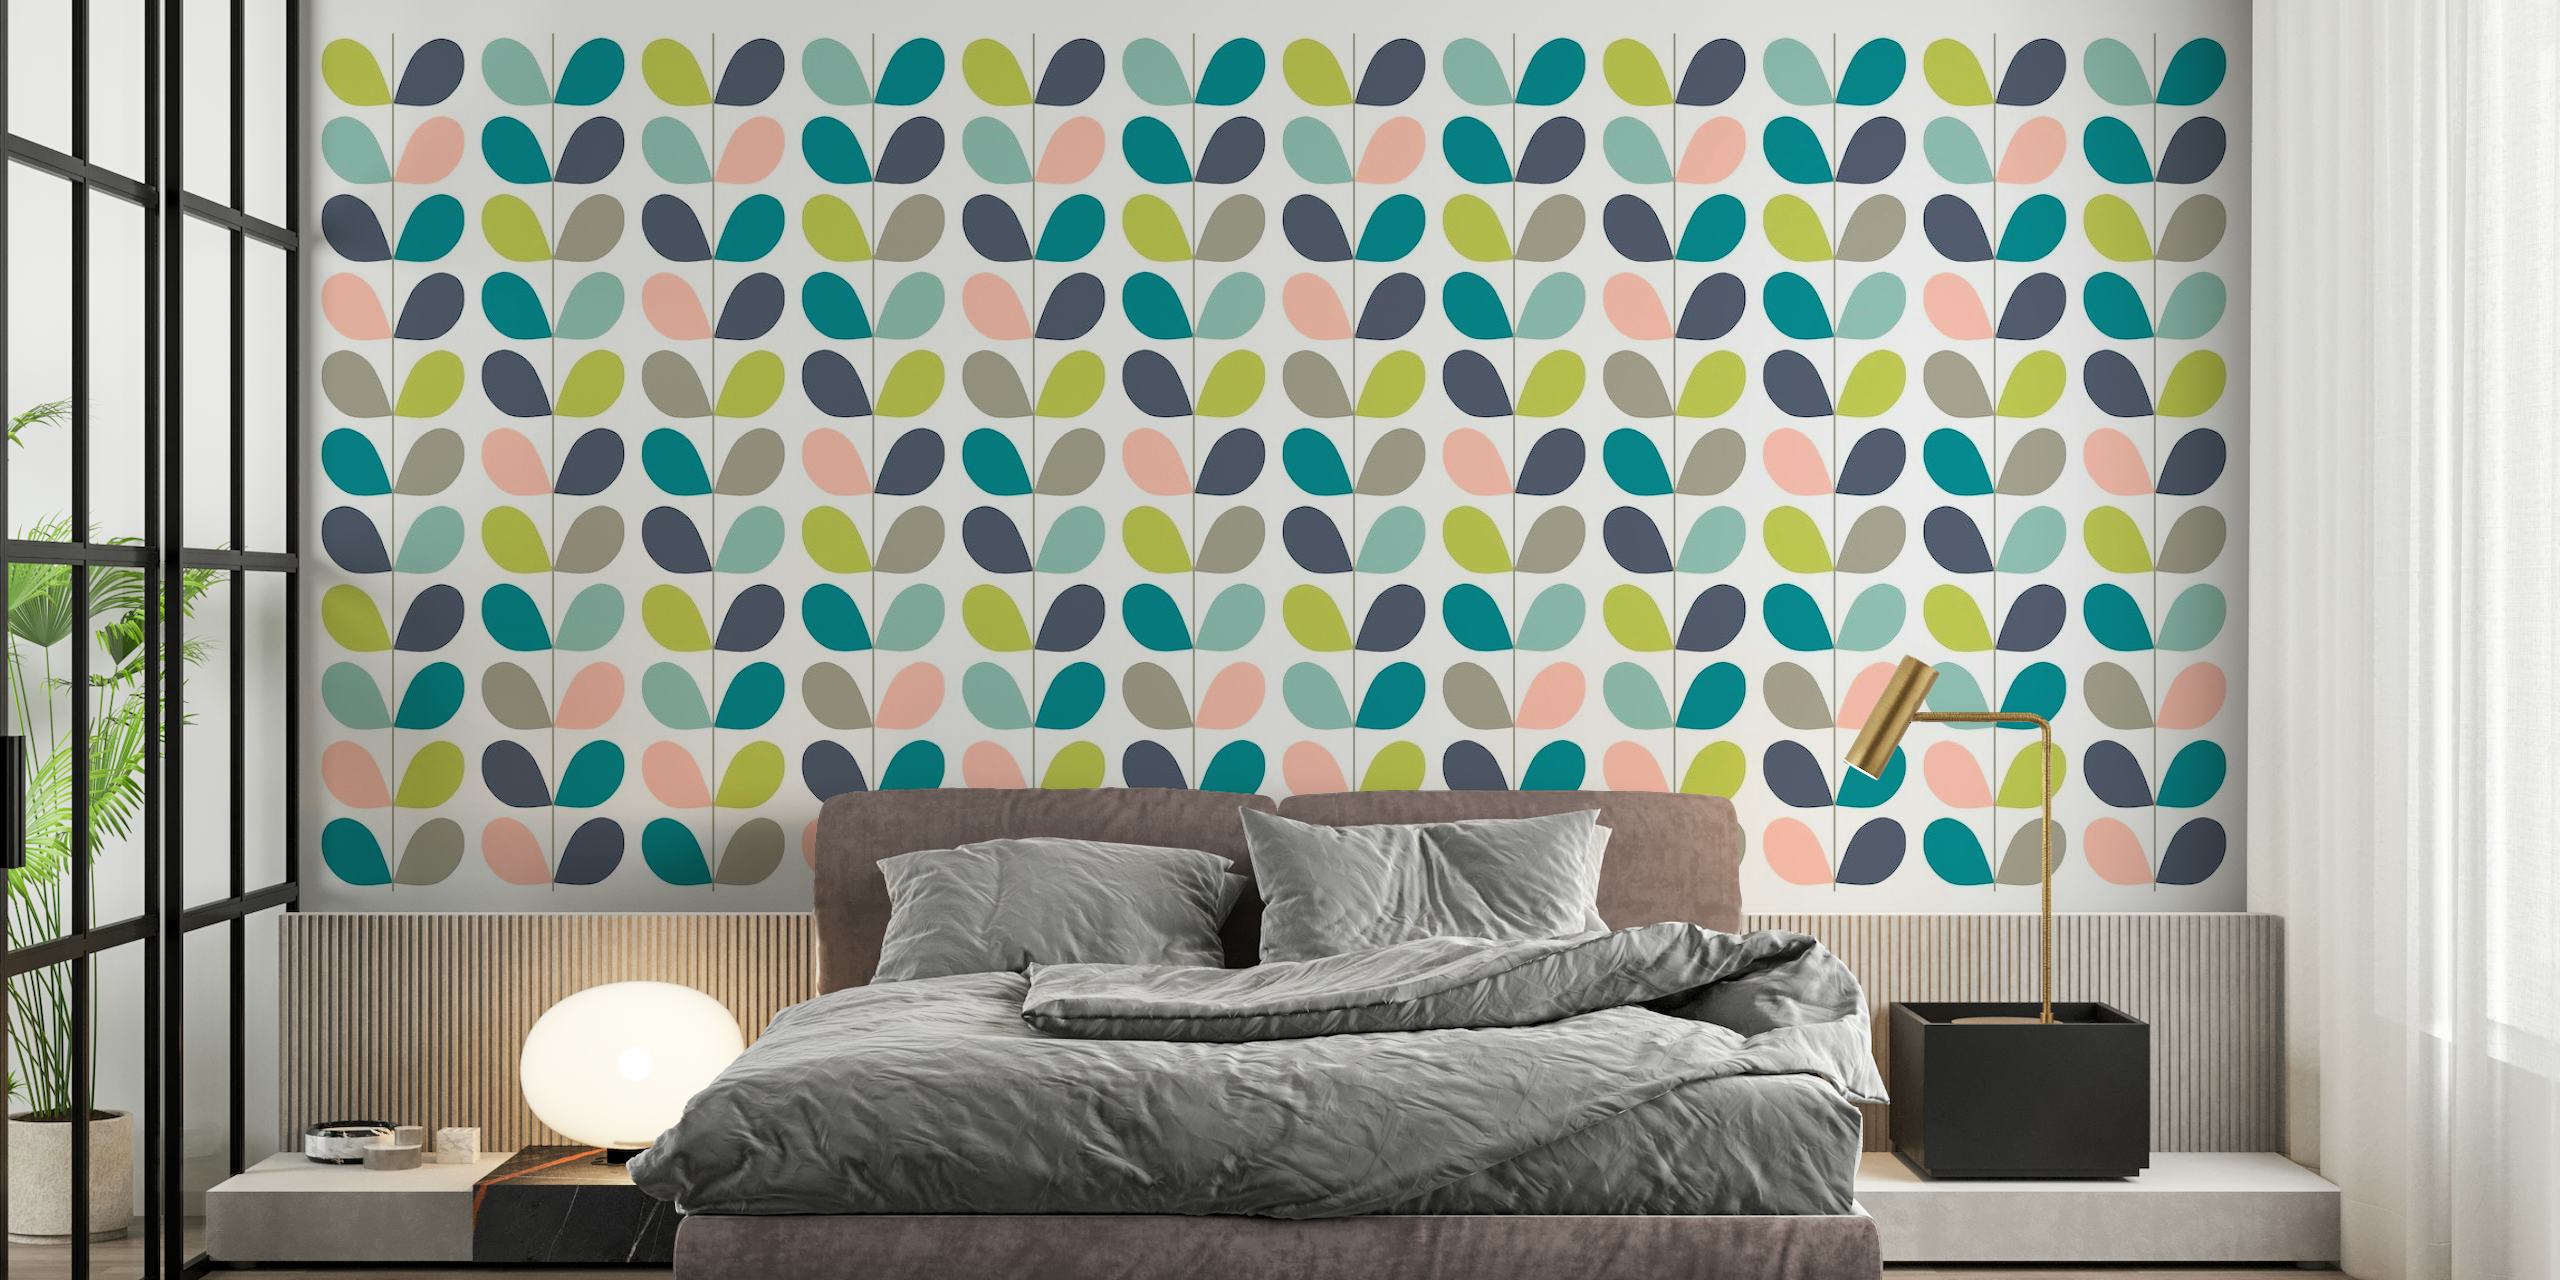 Feuilles pastel stylisées dans un motif mural minimaliste